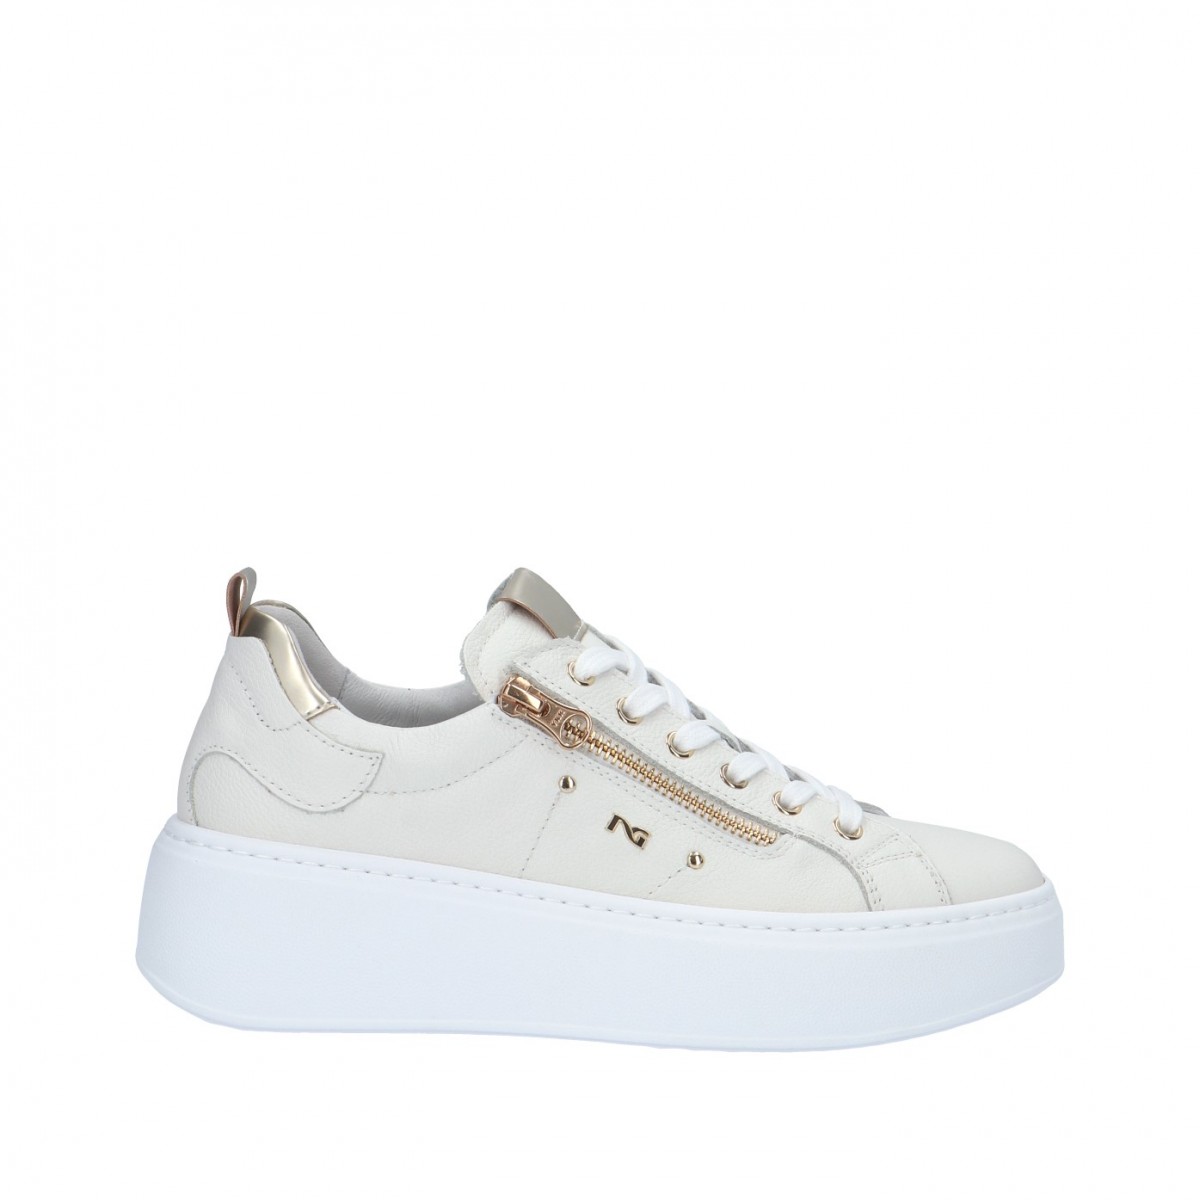 Nerogiardini Sneaker Bianco/platino Gomma E306541D